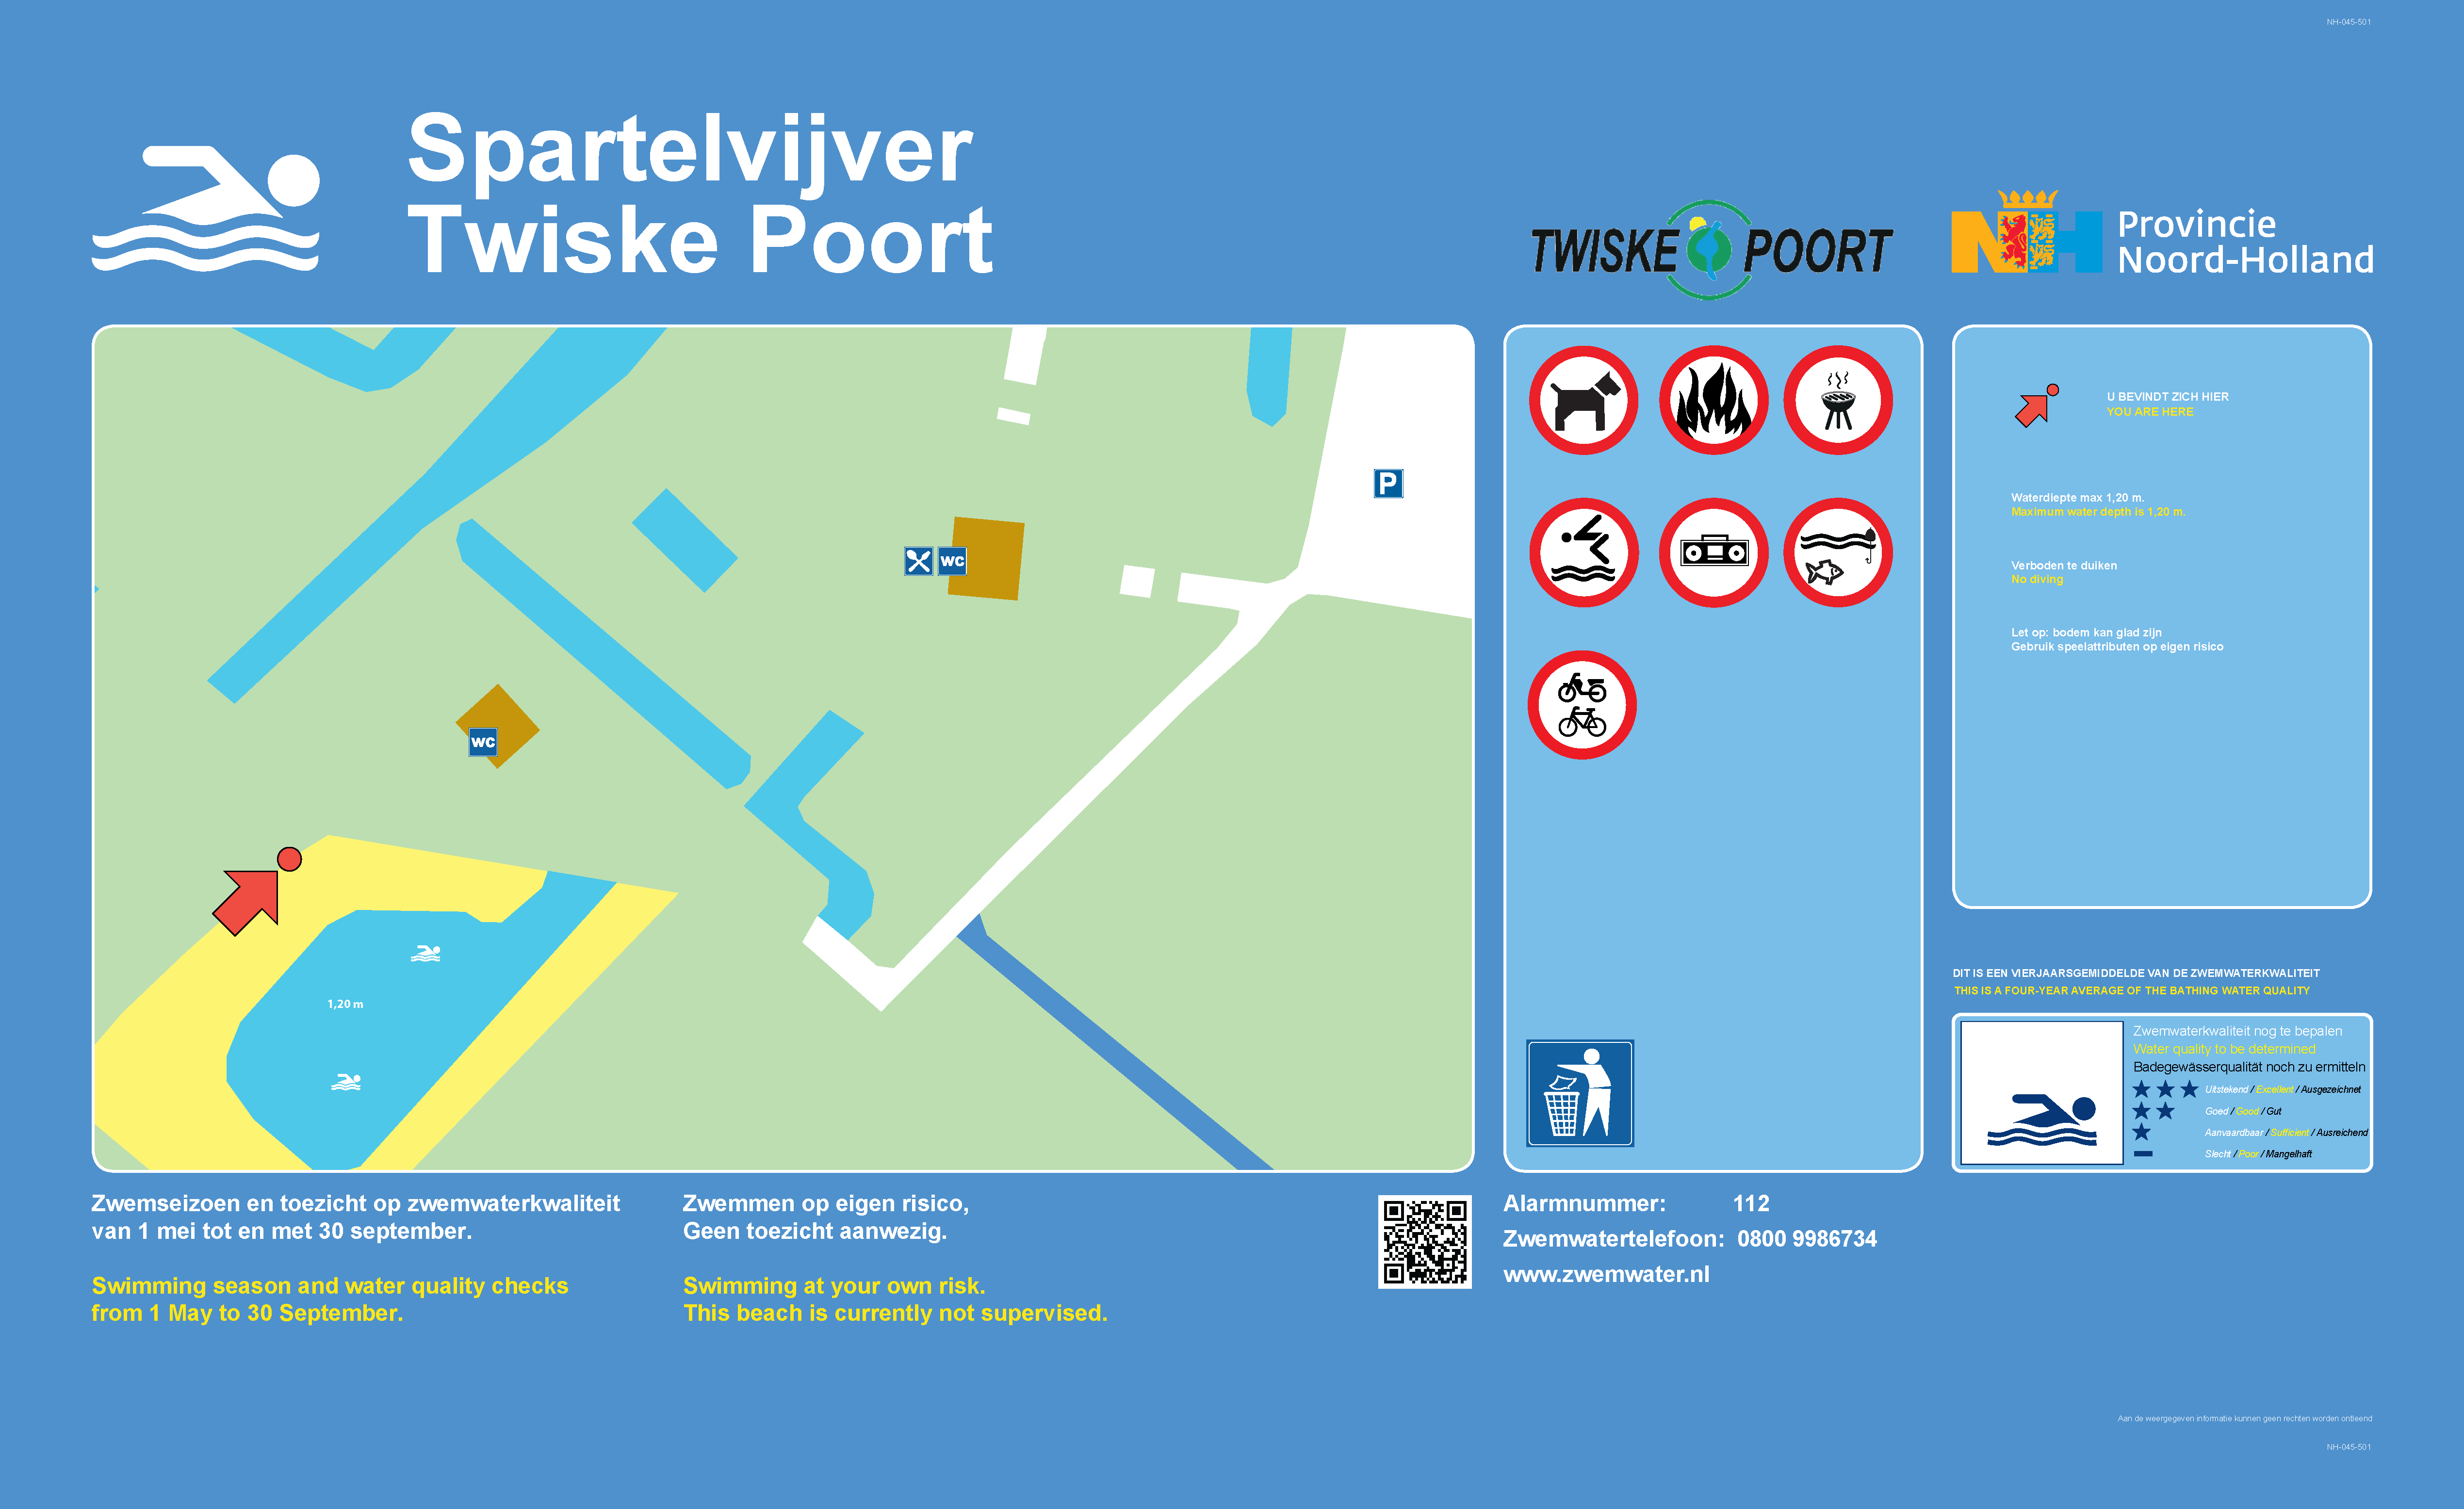 Het informatiebord bij zwemlocatie Spartelvijver Twiske Poort